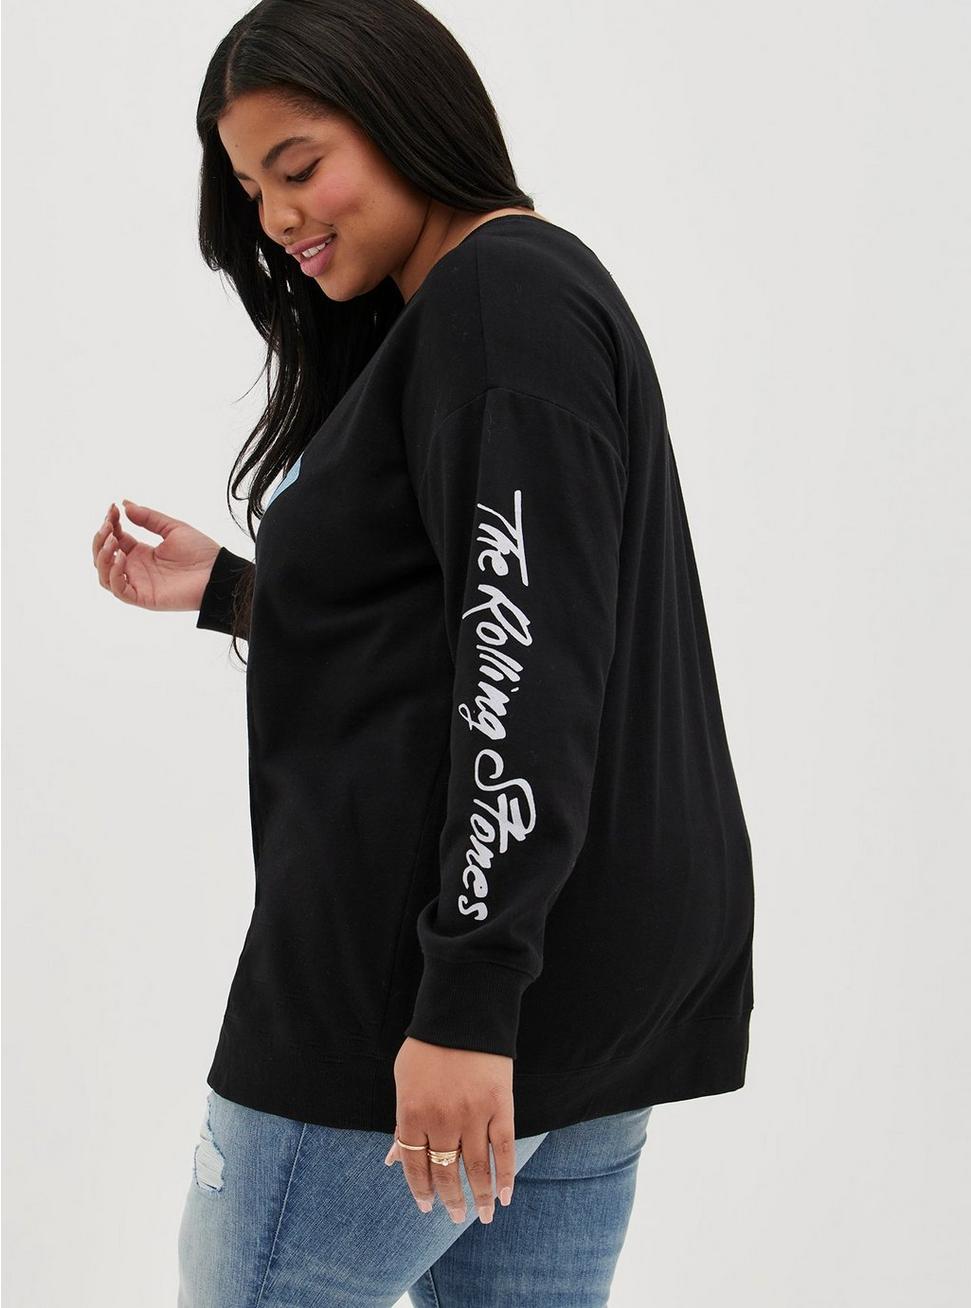 Plus Size - Tunic Sweatshirt - Cozy Fleece Rolling Stones